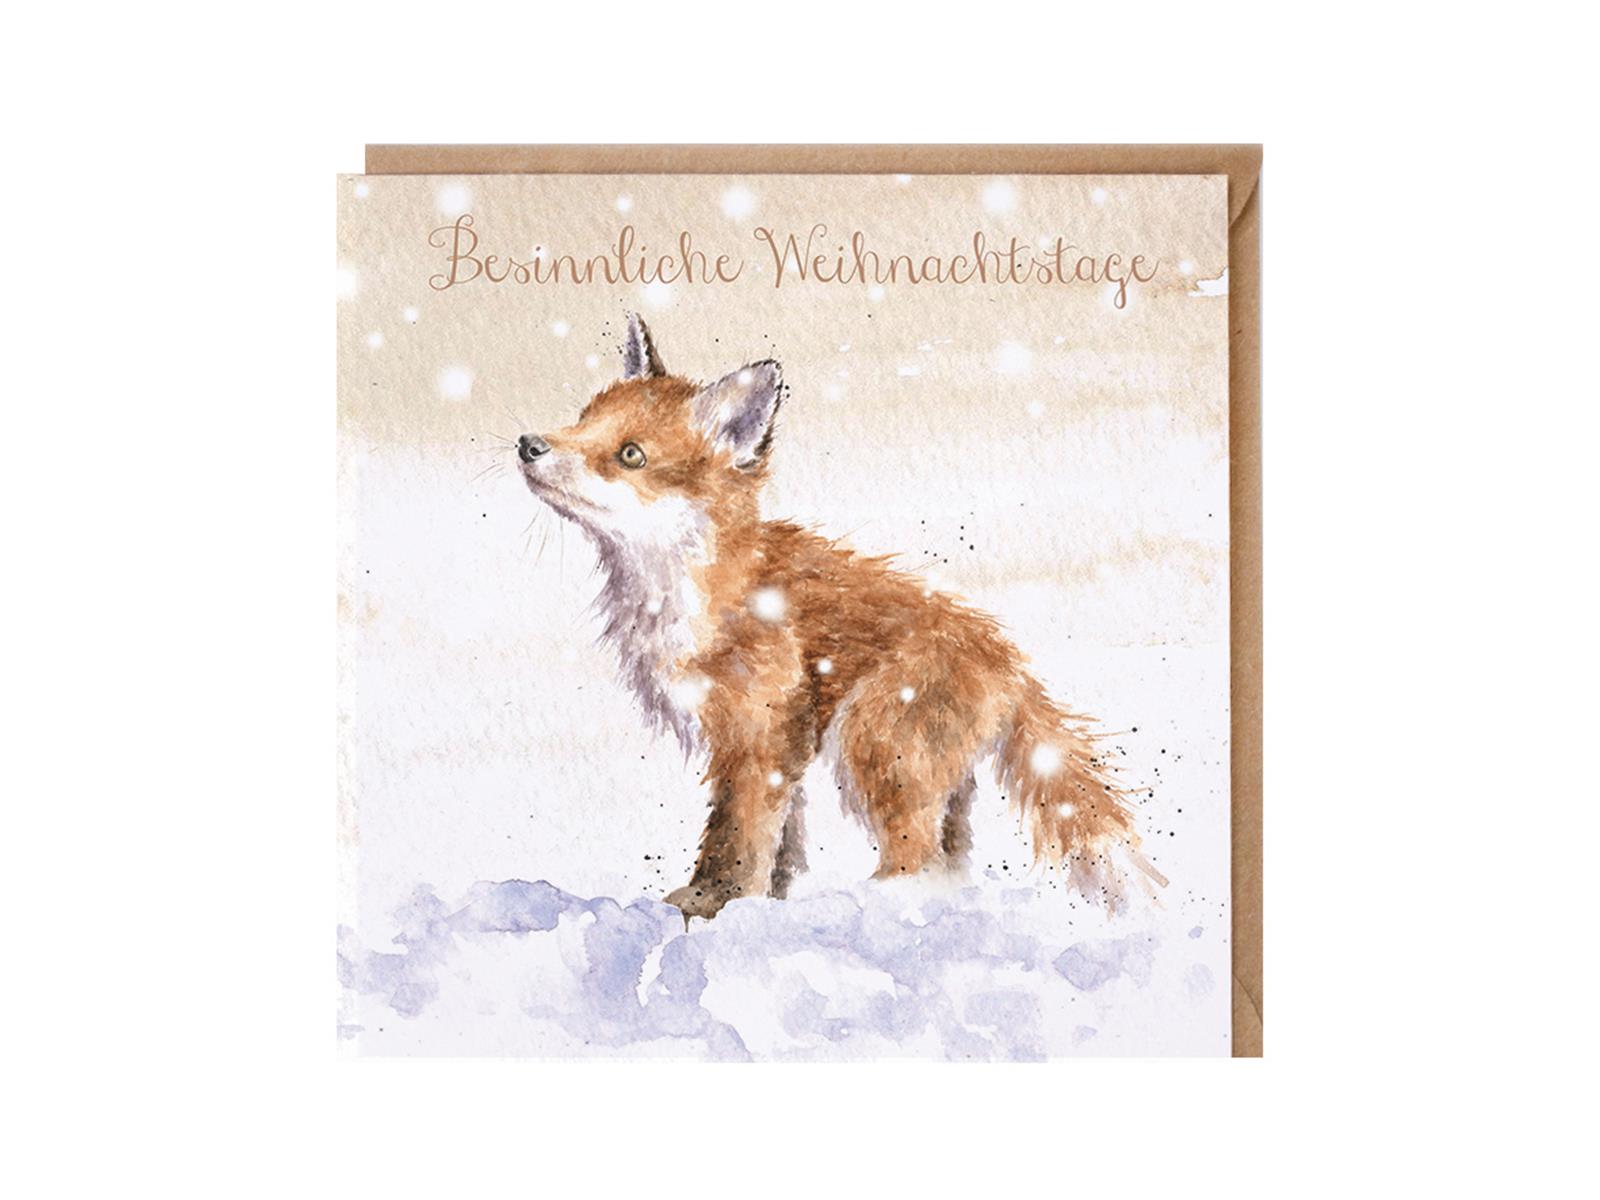 Wrendale Doppelkarte Weihnachten mit Umschlag, Besinnliche Weihnachtstage, Motiv Fuchsbaby im Schnee "Let it Snow"